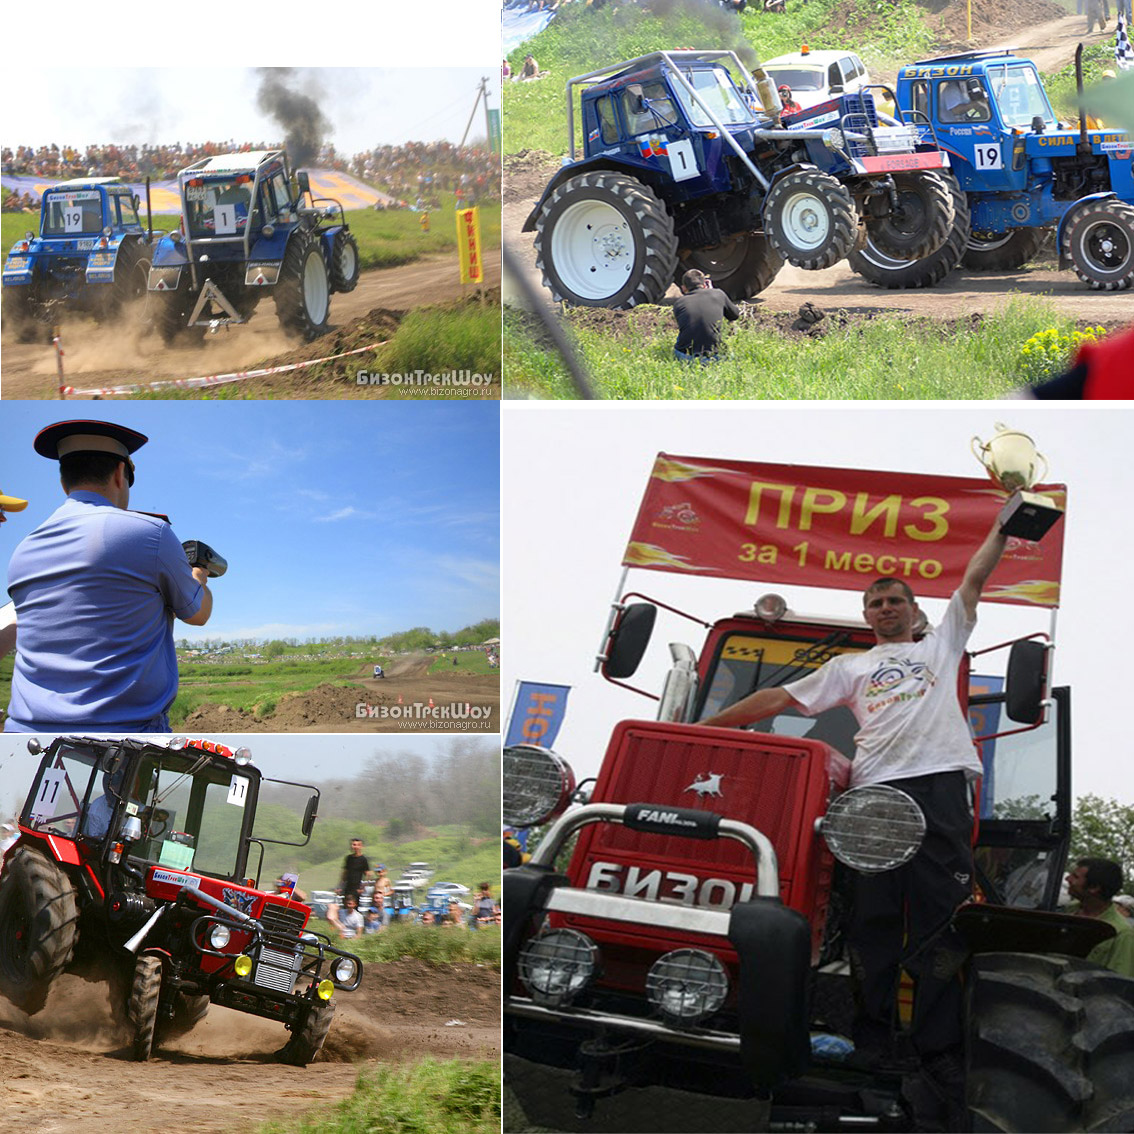 20 мая т.г. в Ростове-на-Дону пройдут Х международные гонки на тракторах «Бизон-Трек-Шоу»